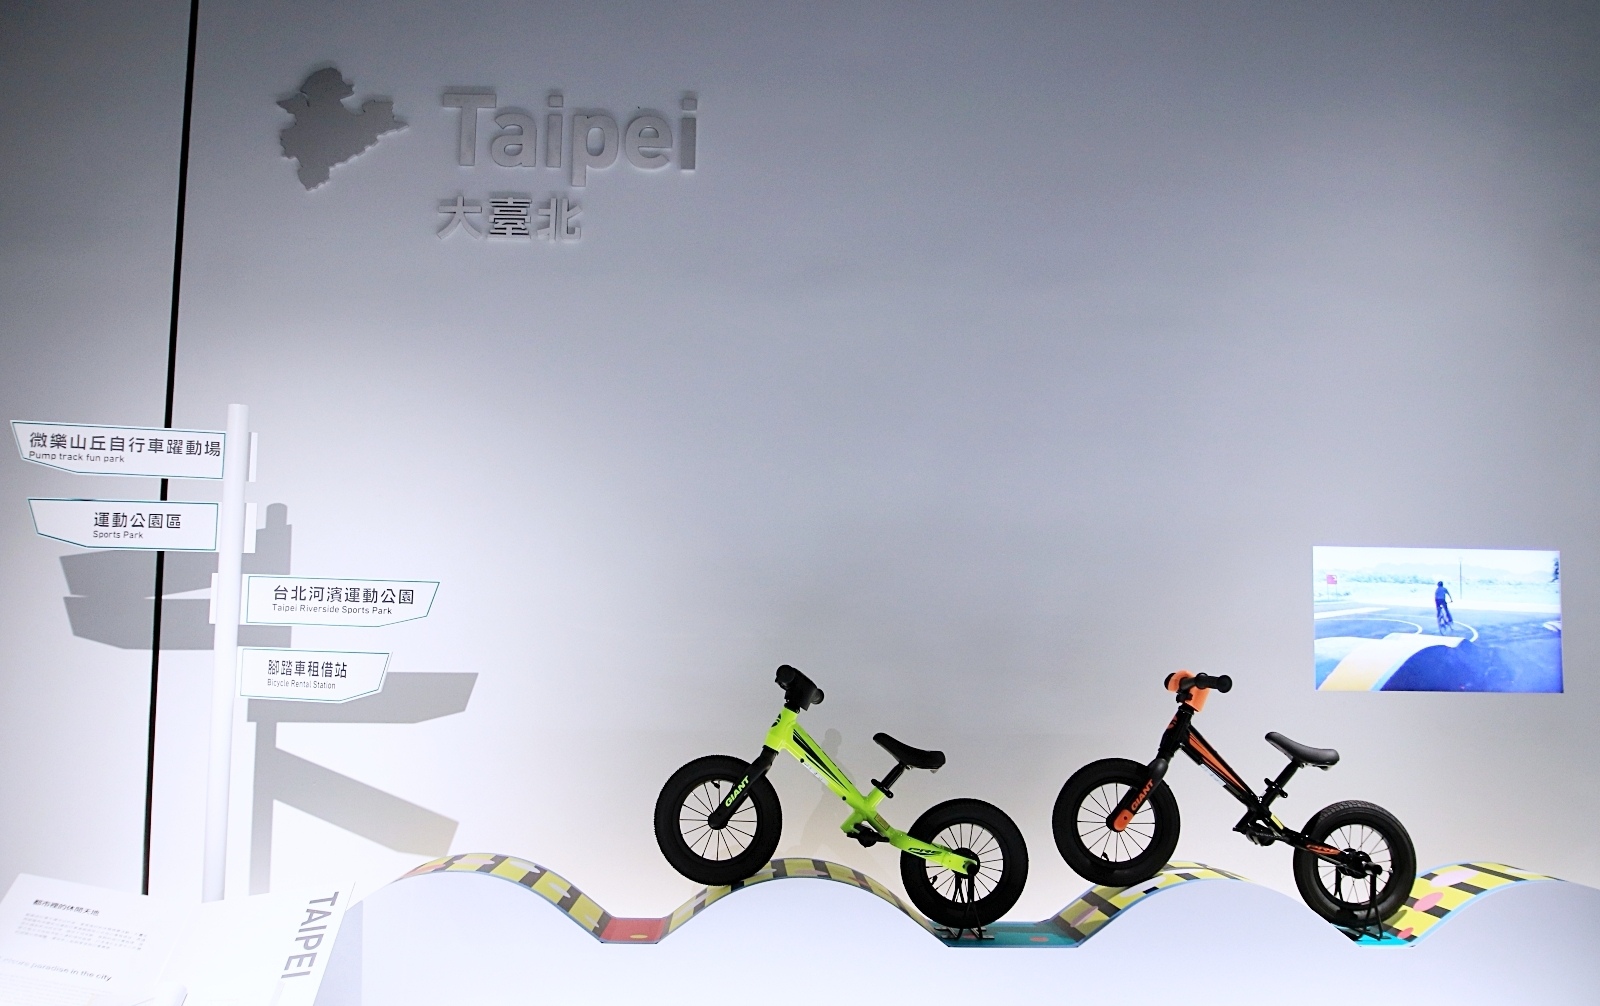 自行車文化探索館：台北是自行車友善城市